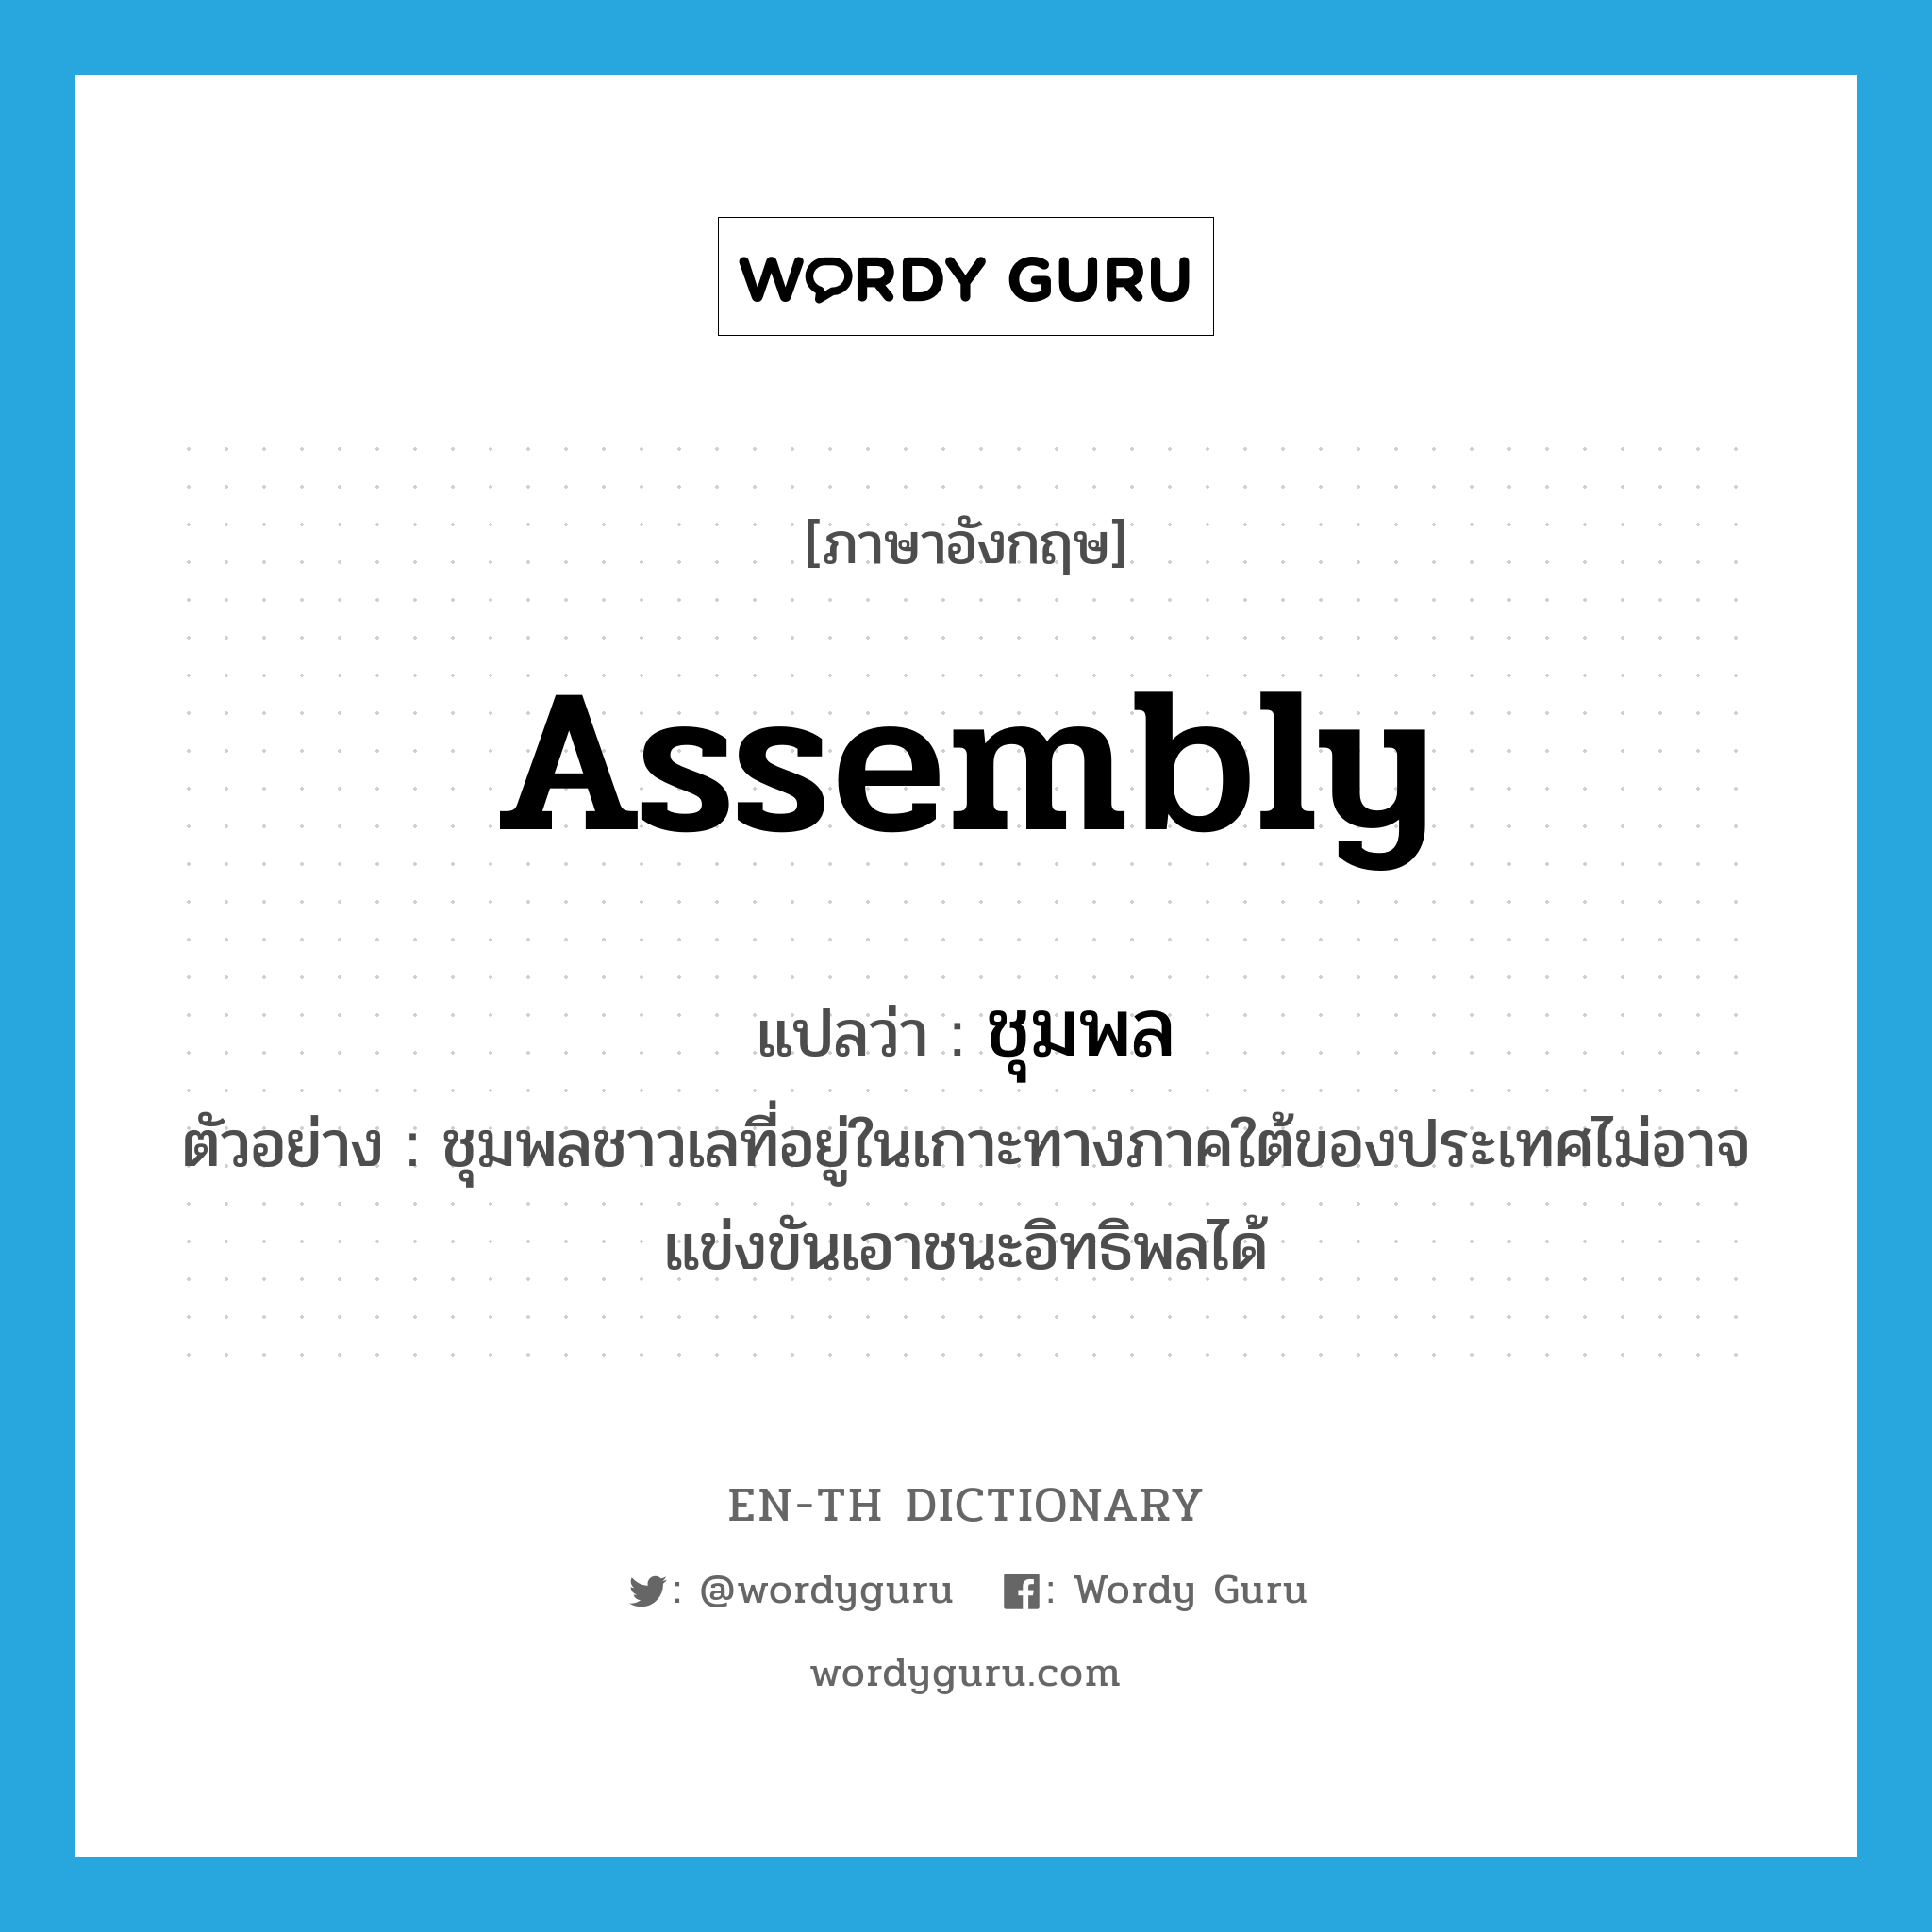 assembly แปลว่า?, คำศัพท์ภาษาอังกฤษ assembly แปลว่า ชุมพล ประเภท N ตัวอย่าง ชุมพลชาวเลที่อยู่ในเกาะทางภาคใต้ของประเทศไม่อาจแข่งขันเอาชนะอิทธิพลได้ หมวด N